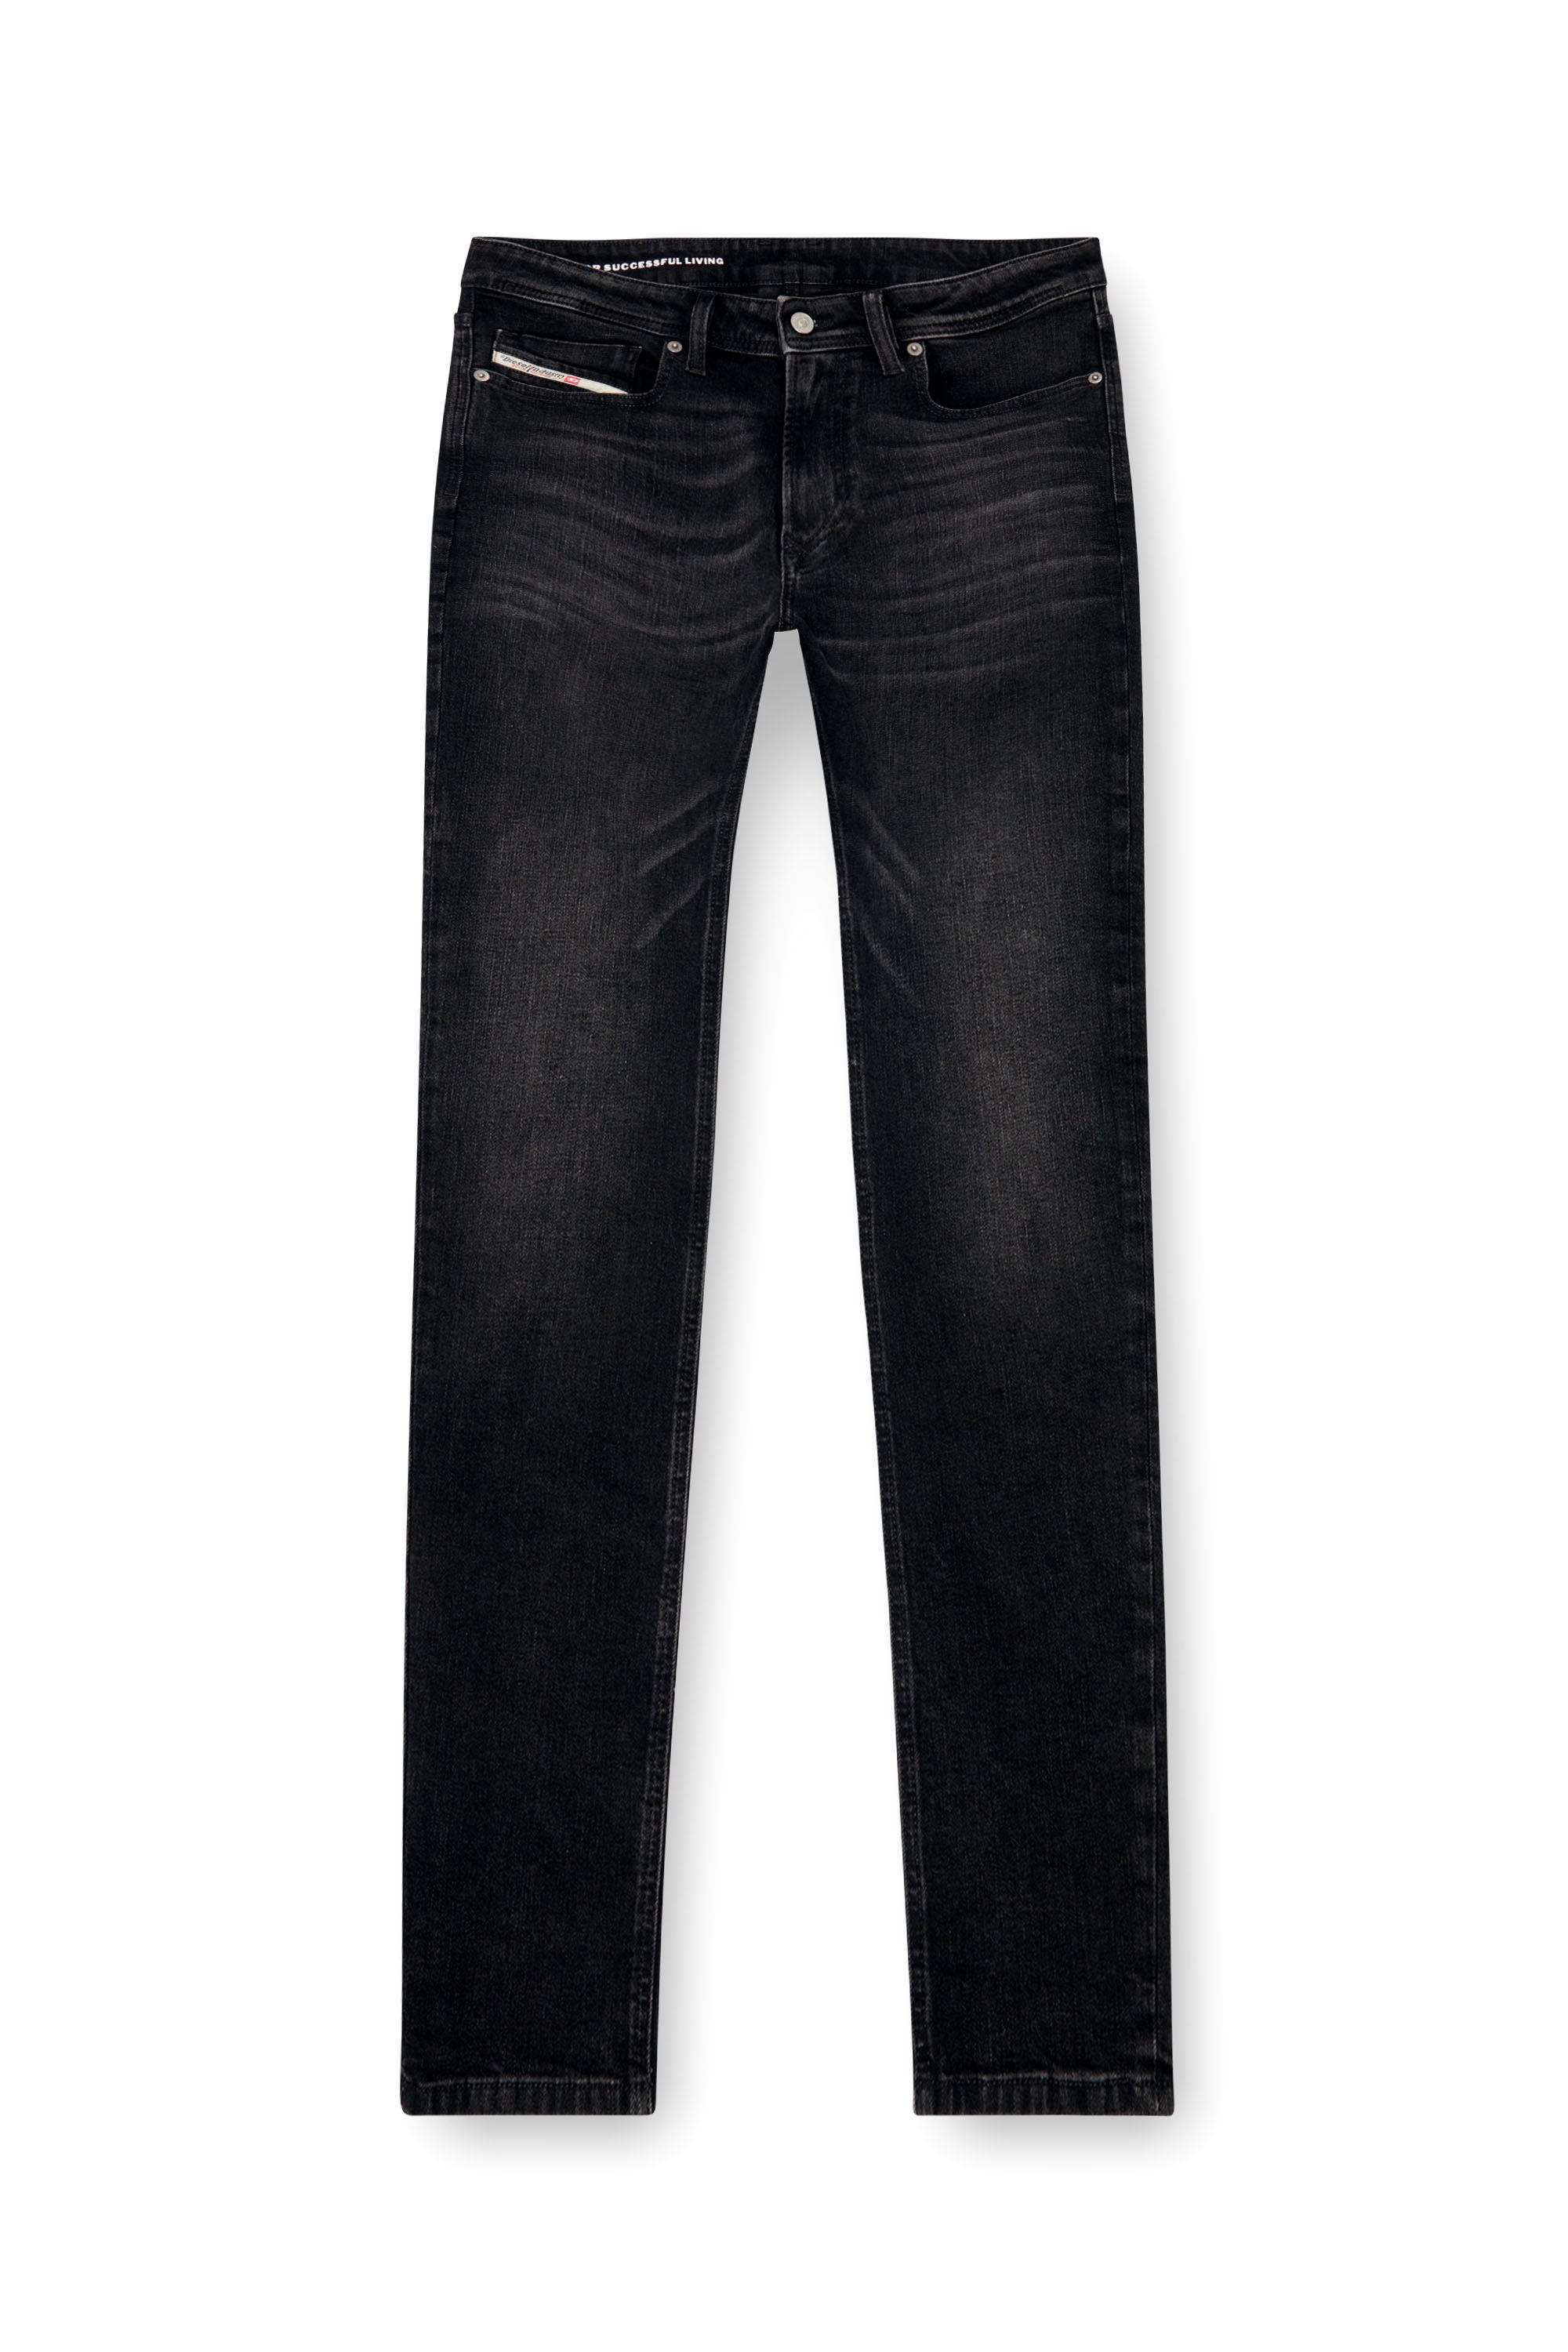 Diesel - Man Skinny Jeans 1979 Sleenker 0GRDA, Black/Dark grey - Image 5